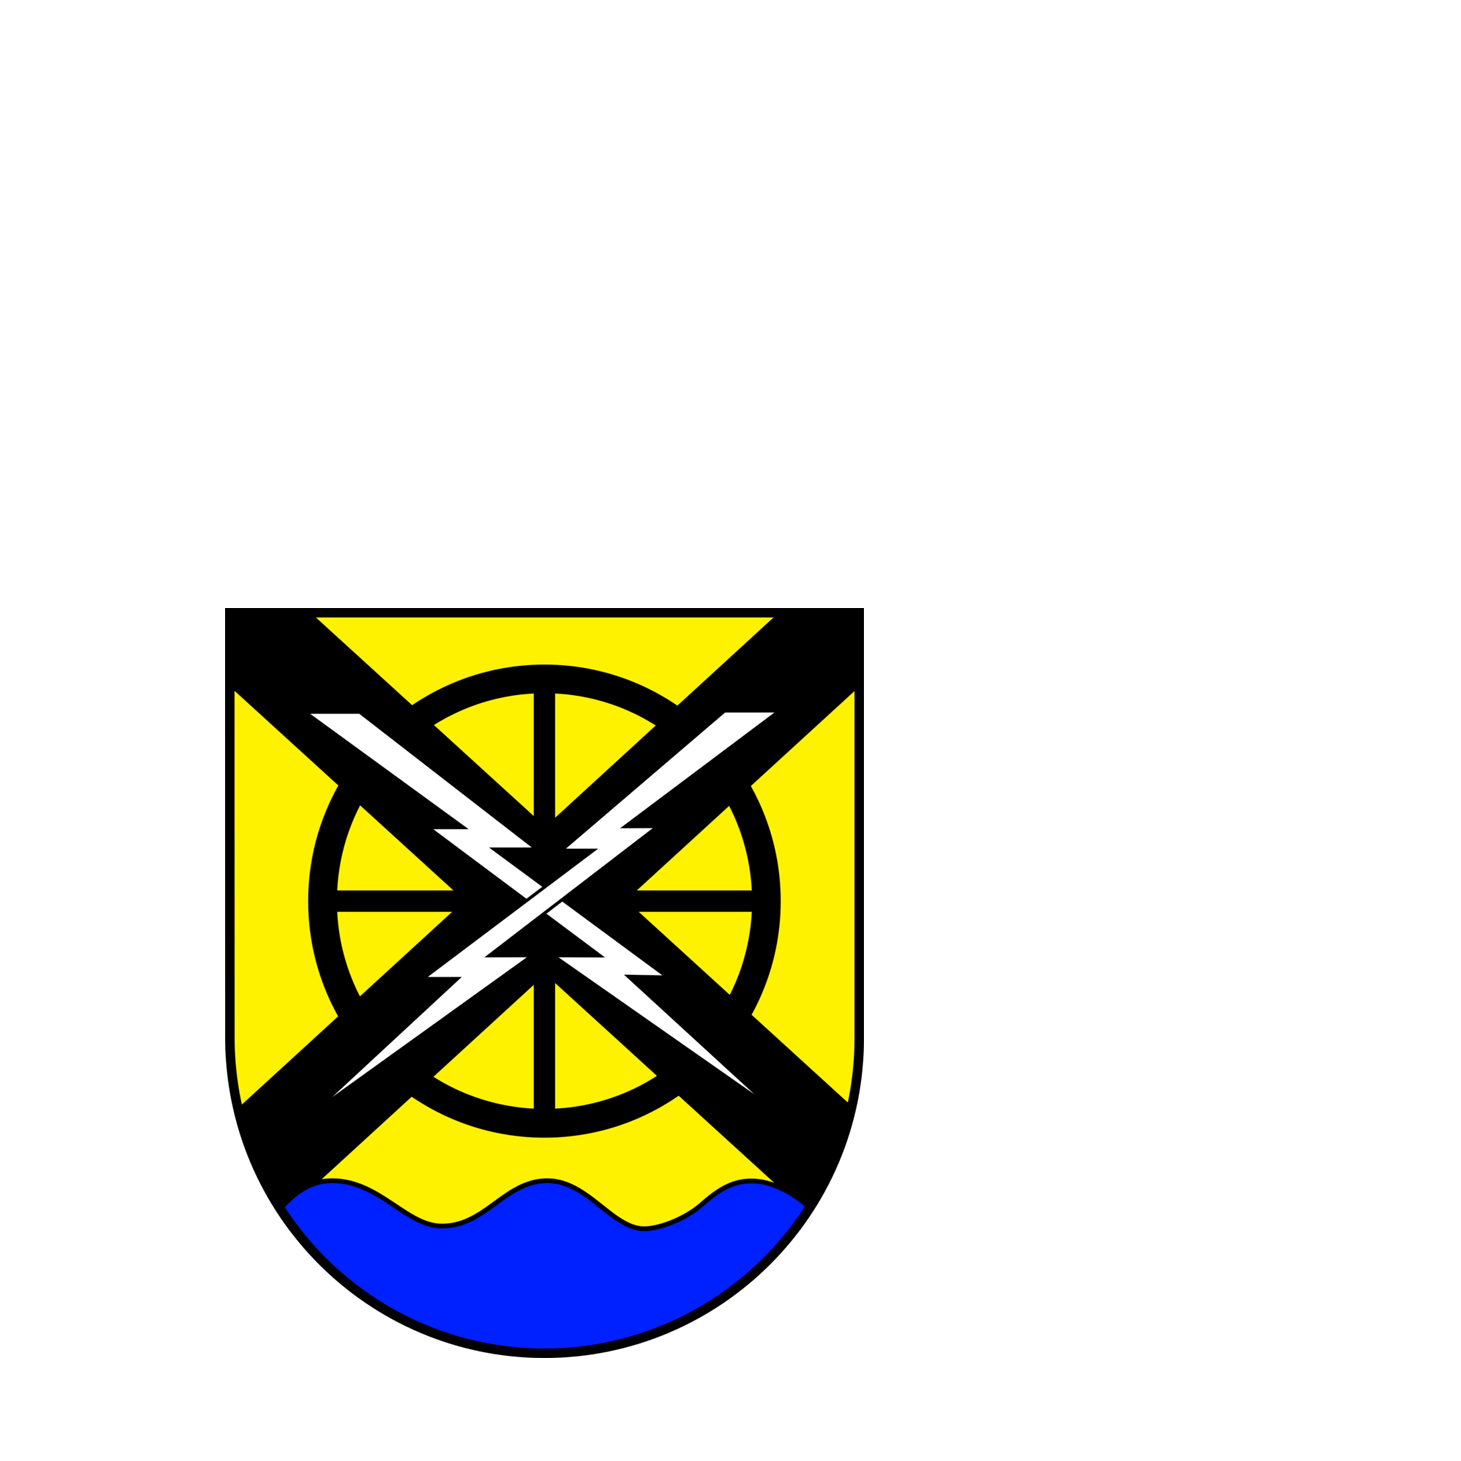 Wappen der Gemeinde Quierschied - © Gemeinde Quierschied